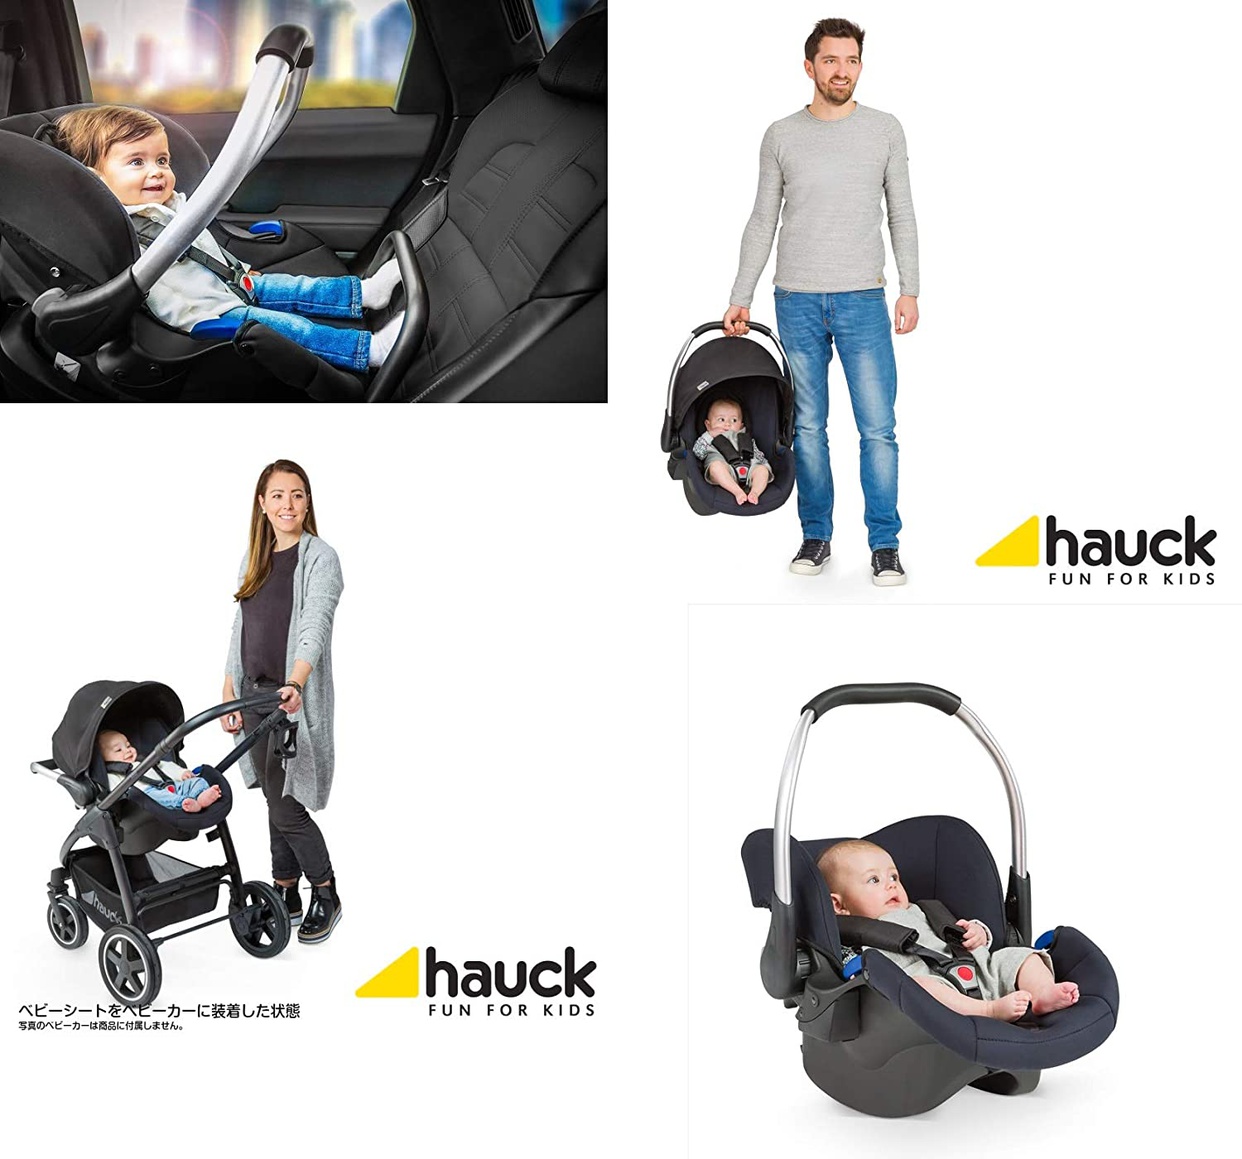 hauck(ハウク) コンフォートフィックスセットの商品画像3 